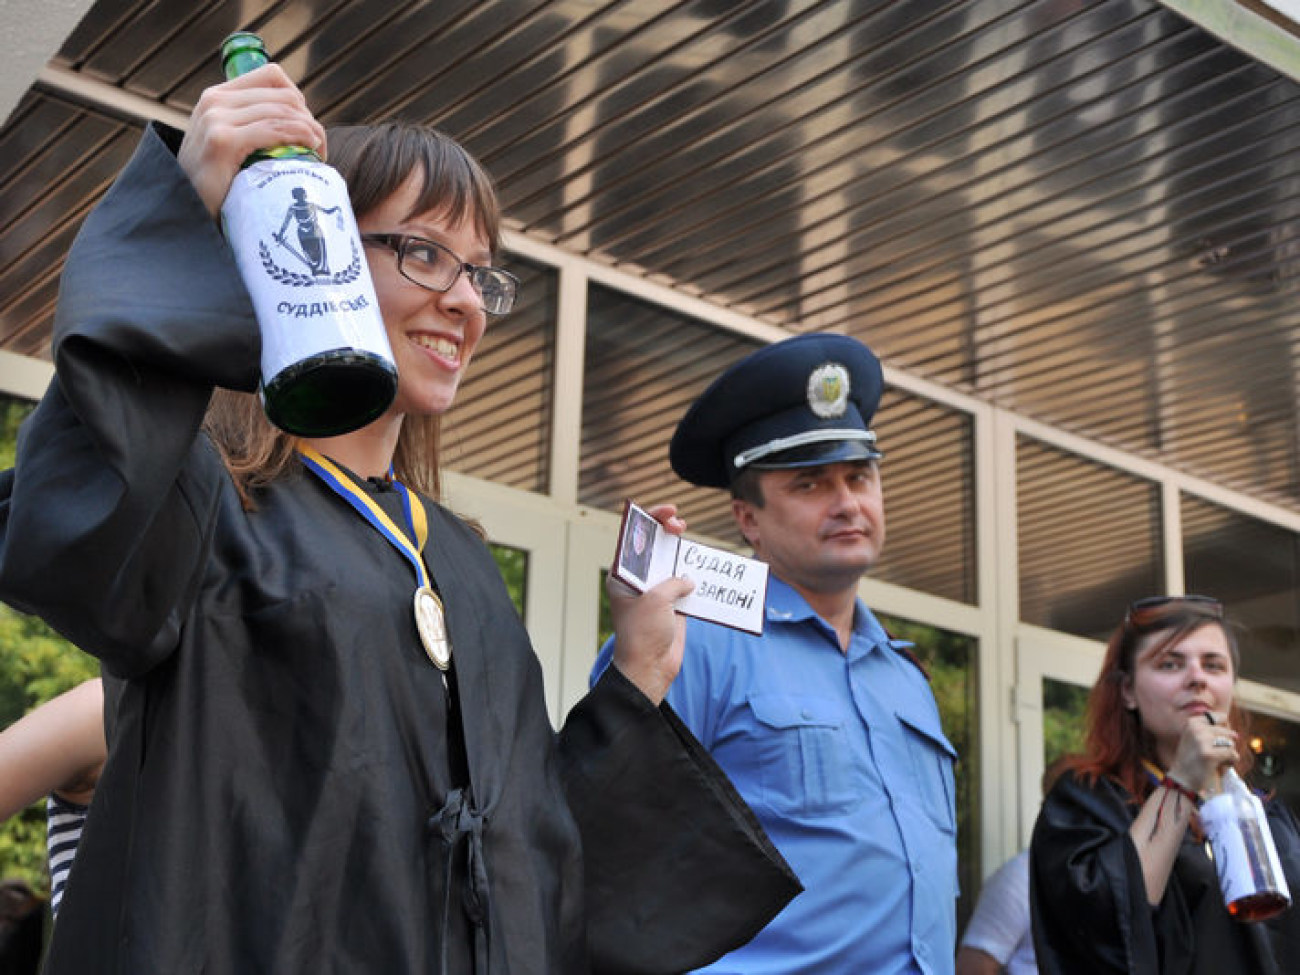 В милиции тоже есть люди: активисты пикетировали МВД, 20 июня 2013г.